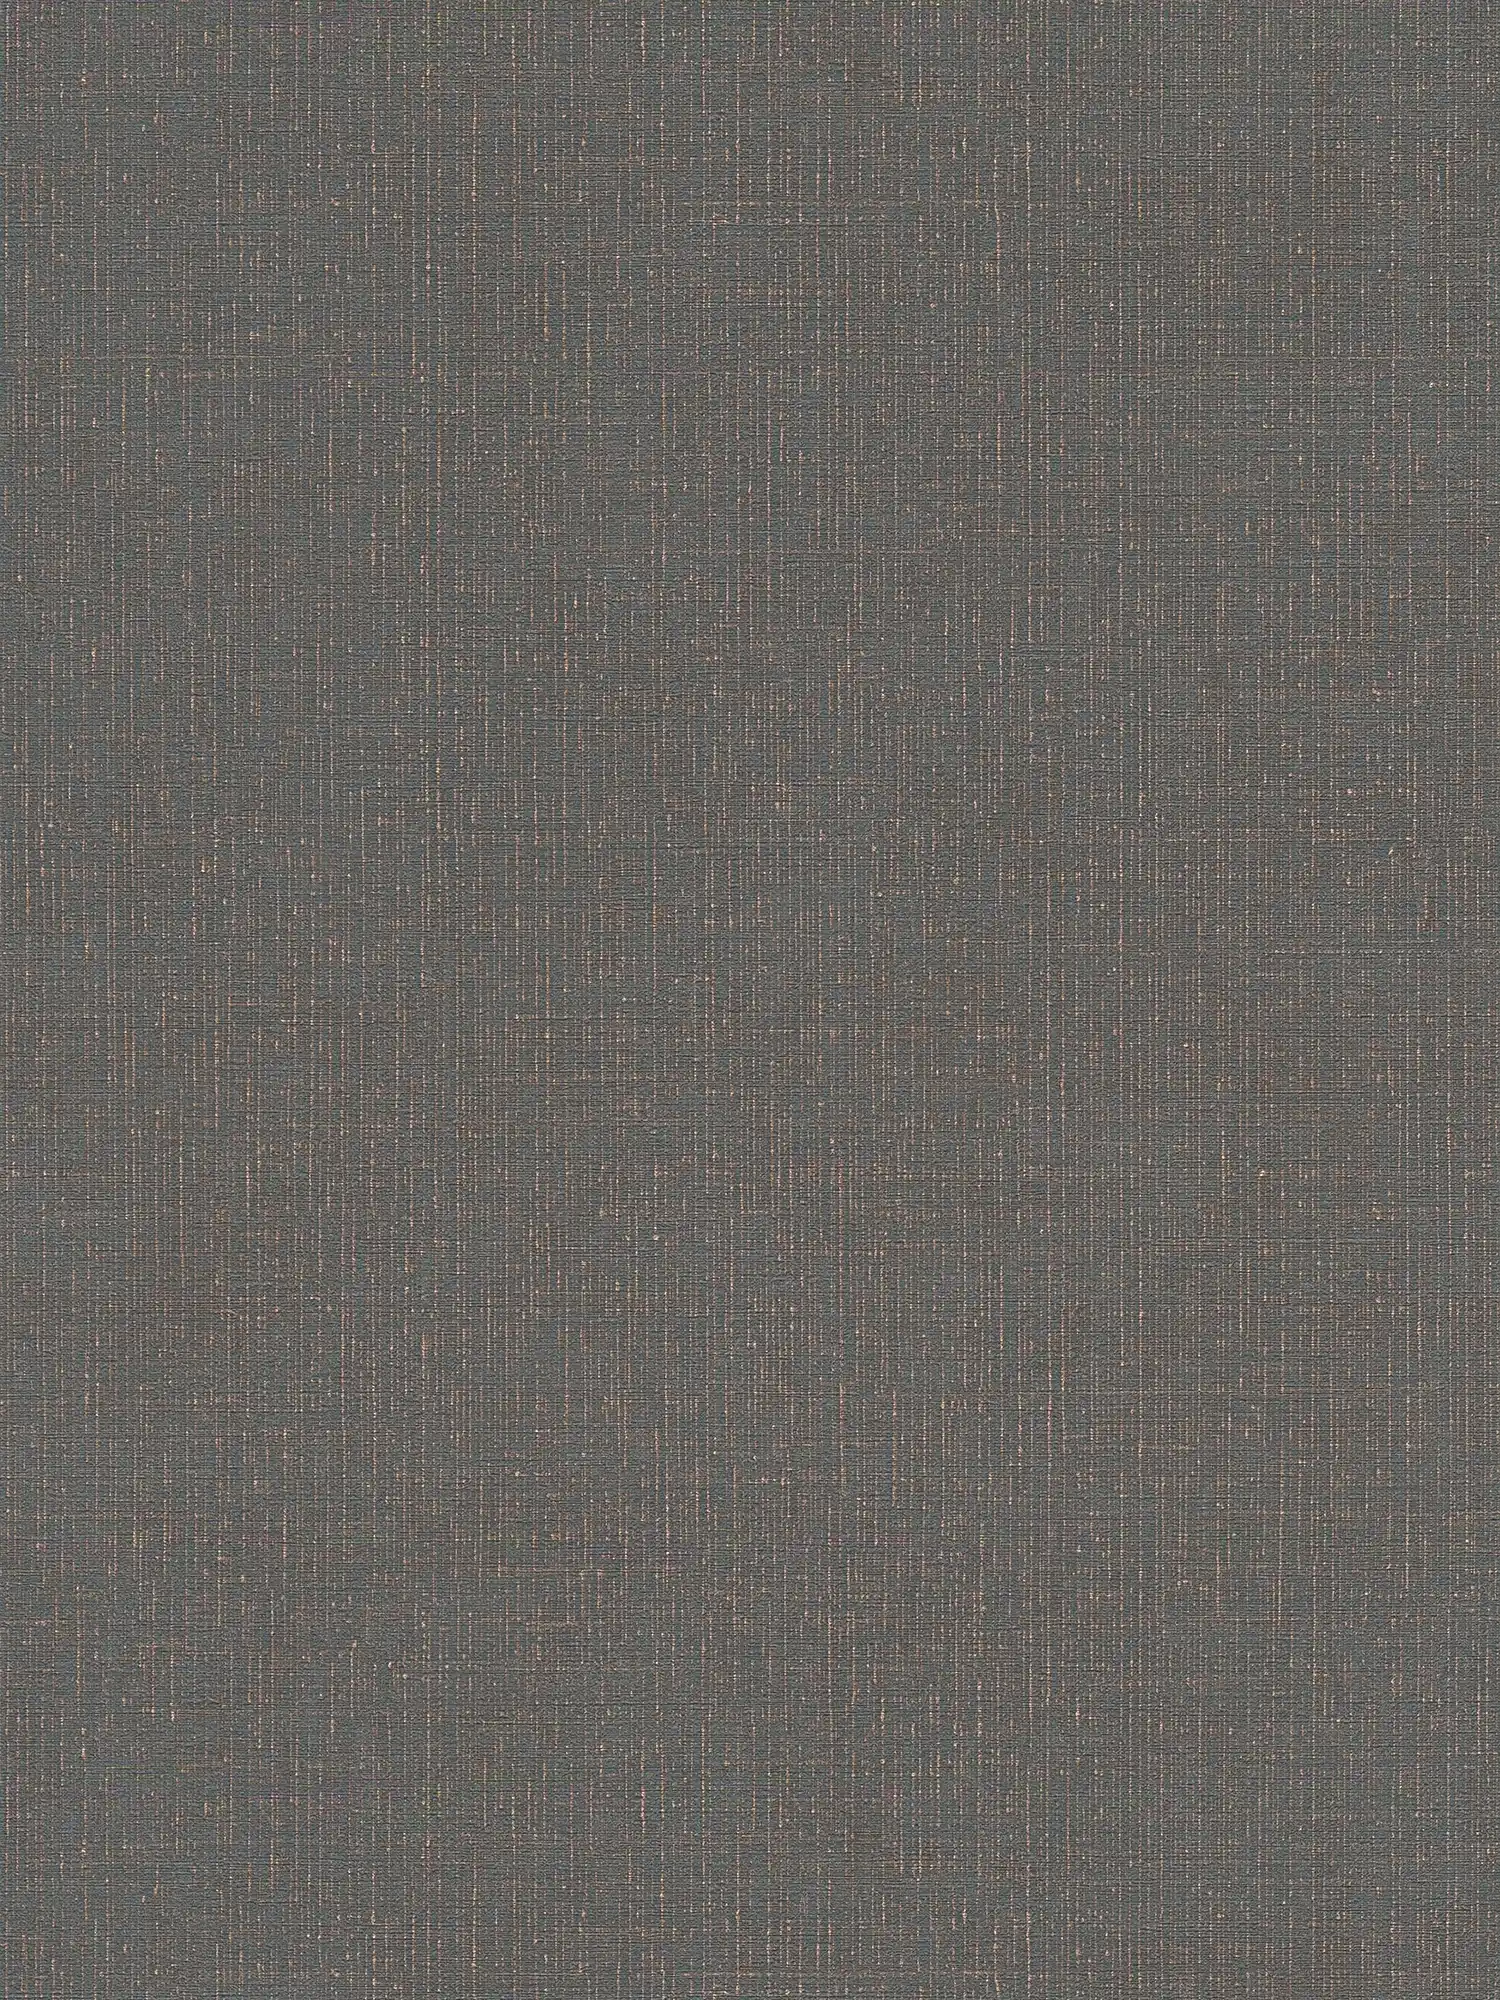 Carta da parati effetto tessuto antracite con struttura in lino - nero, grigio
